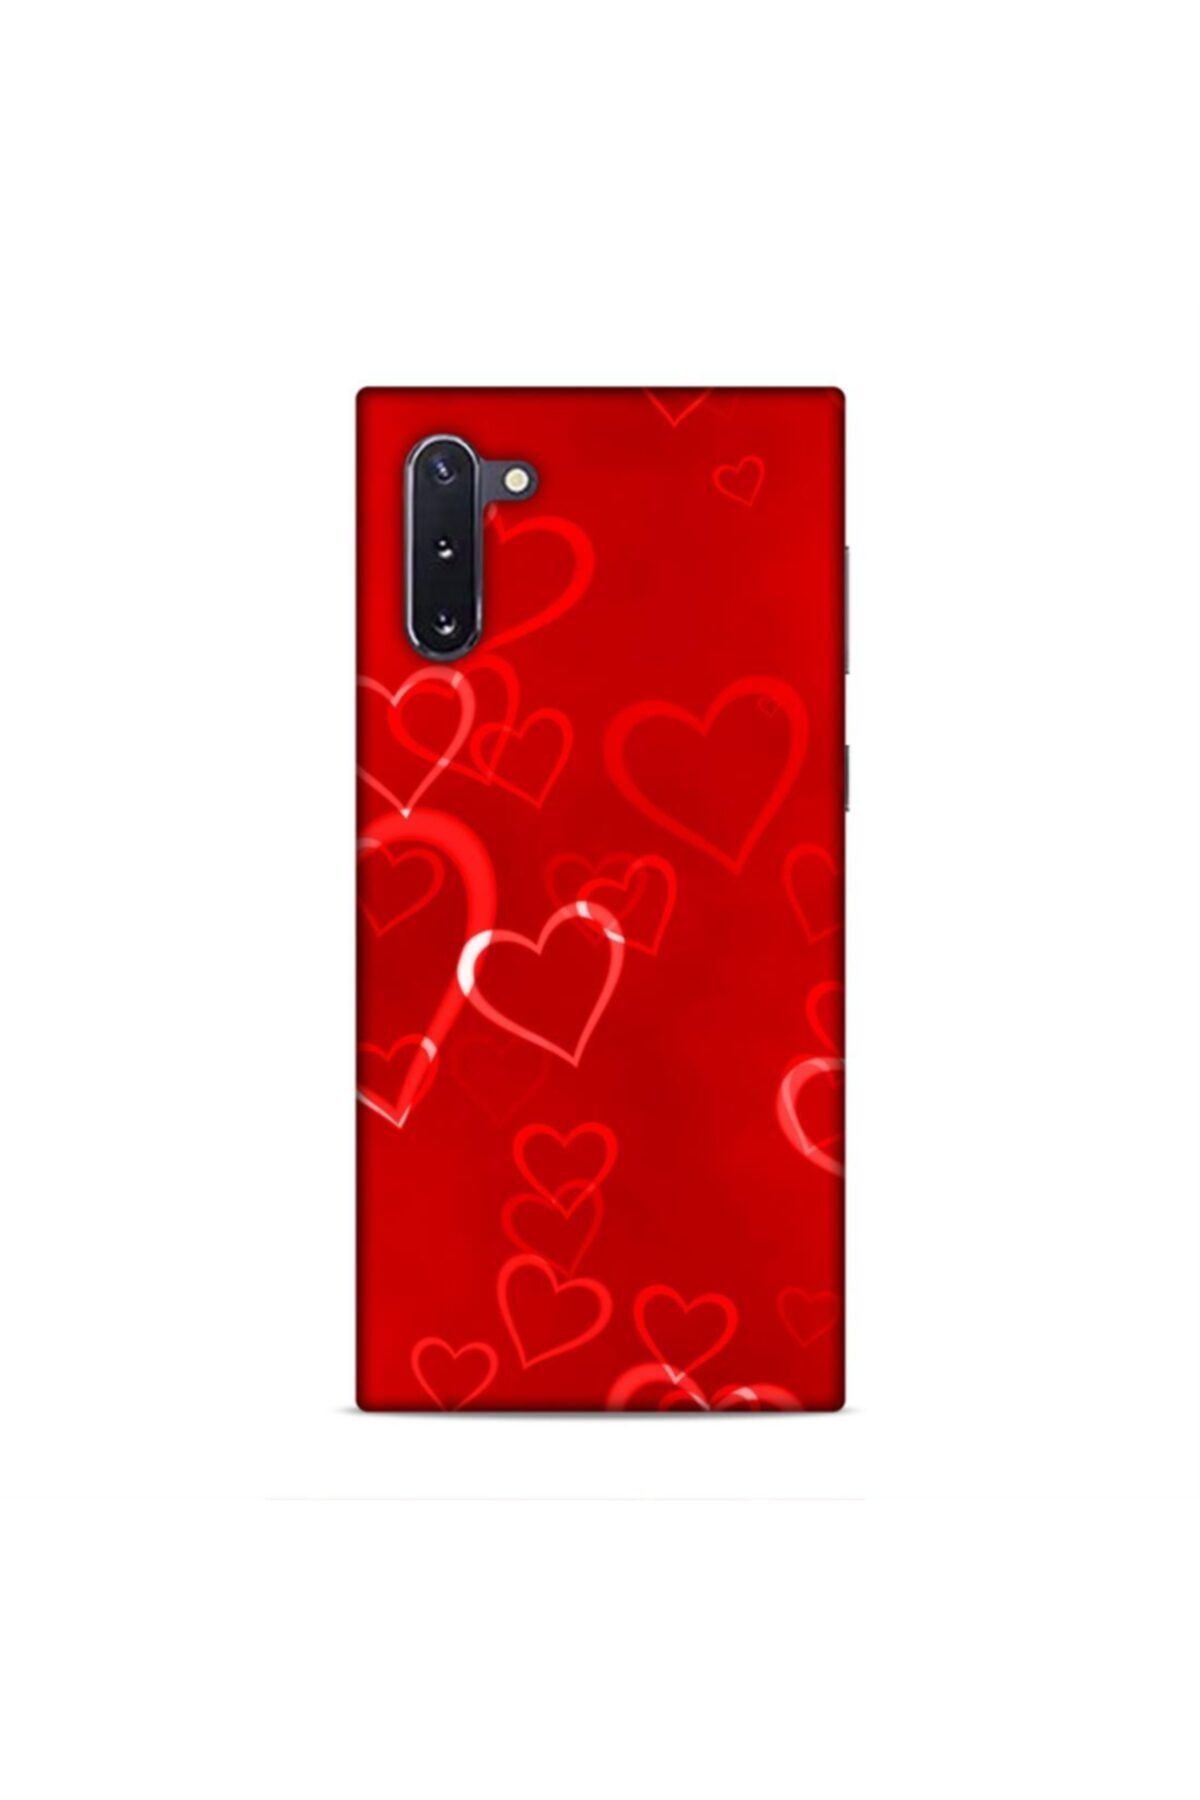 Pickcase Samsung Galaxy Note 10 Kılıf Desenli Arka Kapak Kırmızı Kalpler